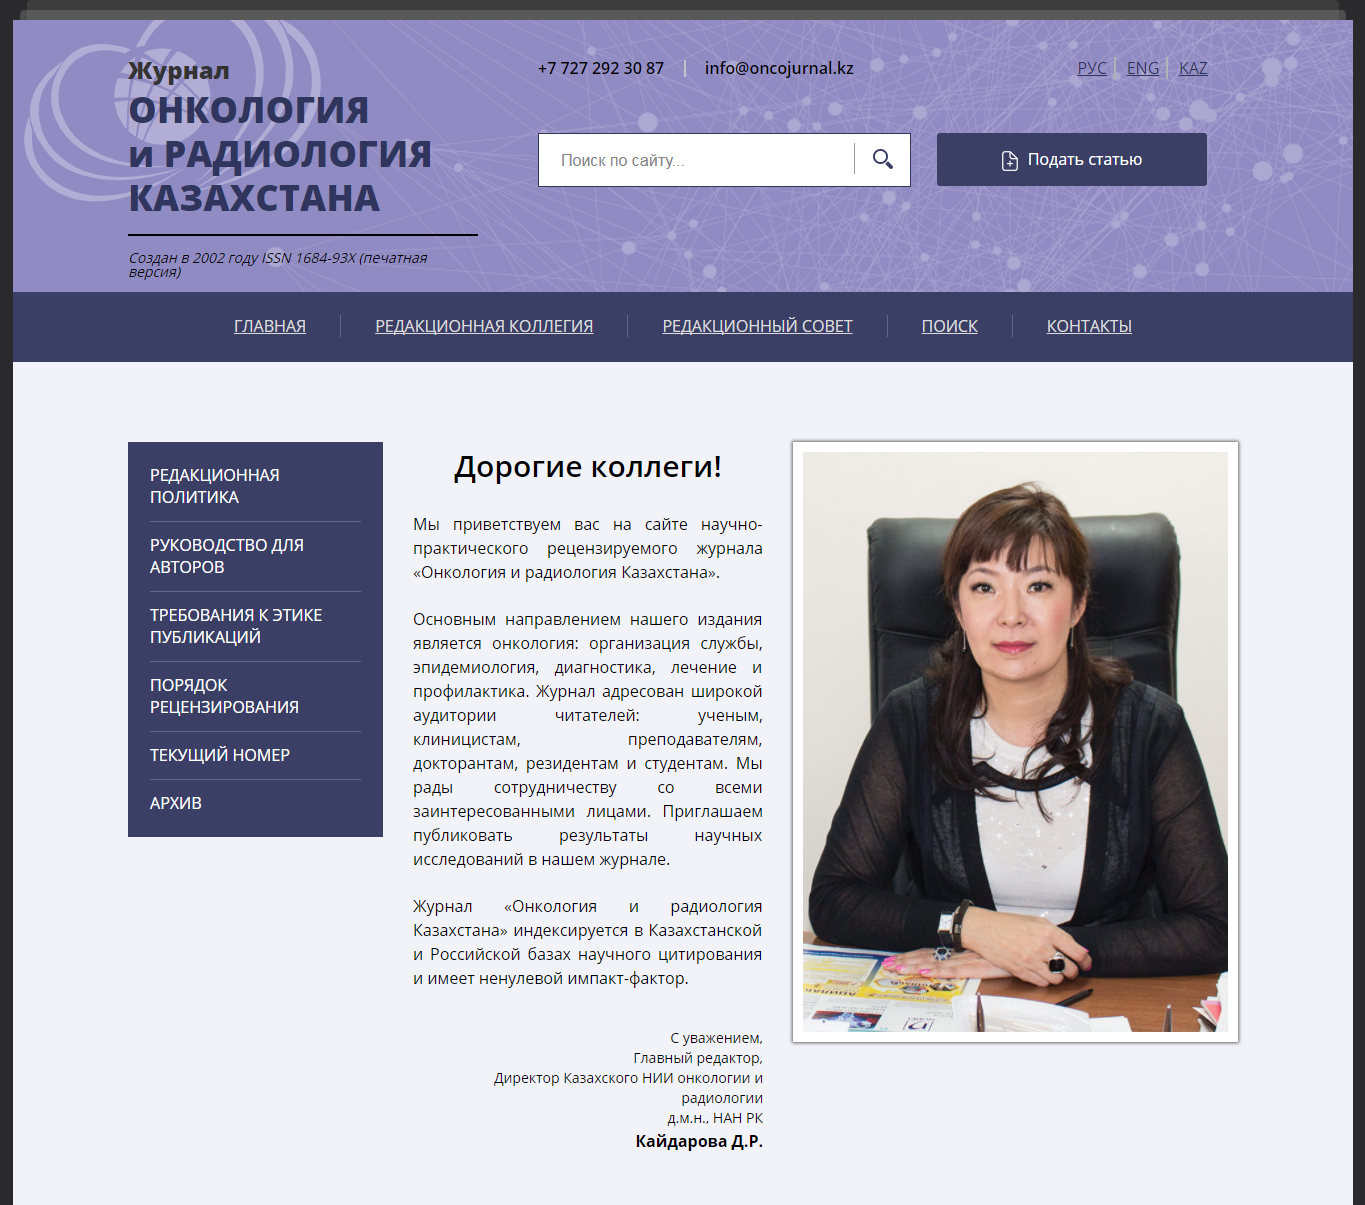 Приглашаем вас публиковаться в журнале «Онкология и радиология Казахстана».